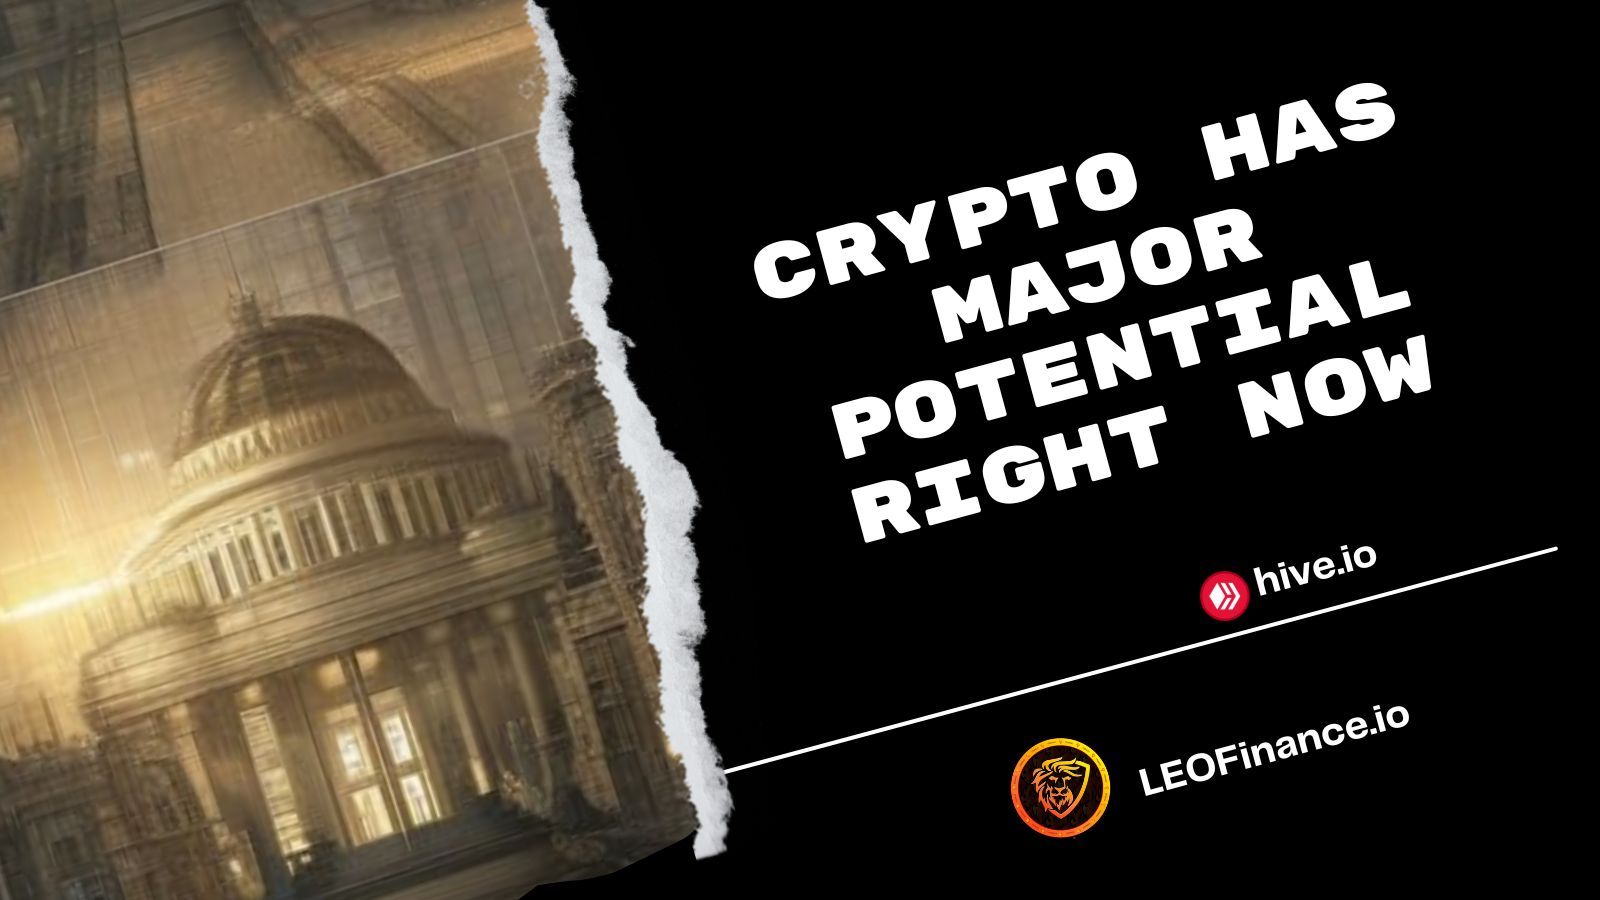 @bitcoinflood/crypto-has-major-potential-right-now